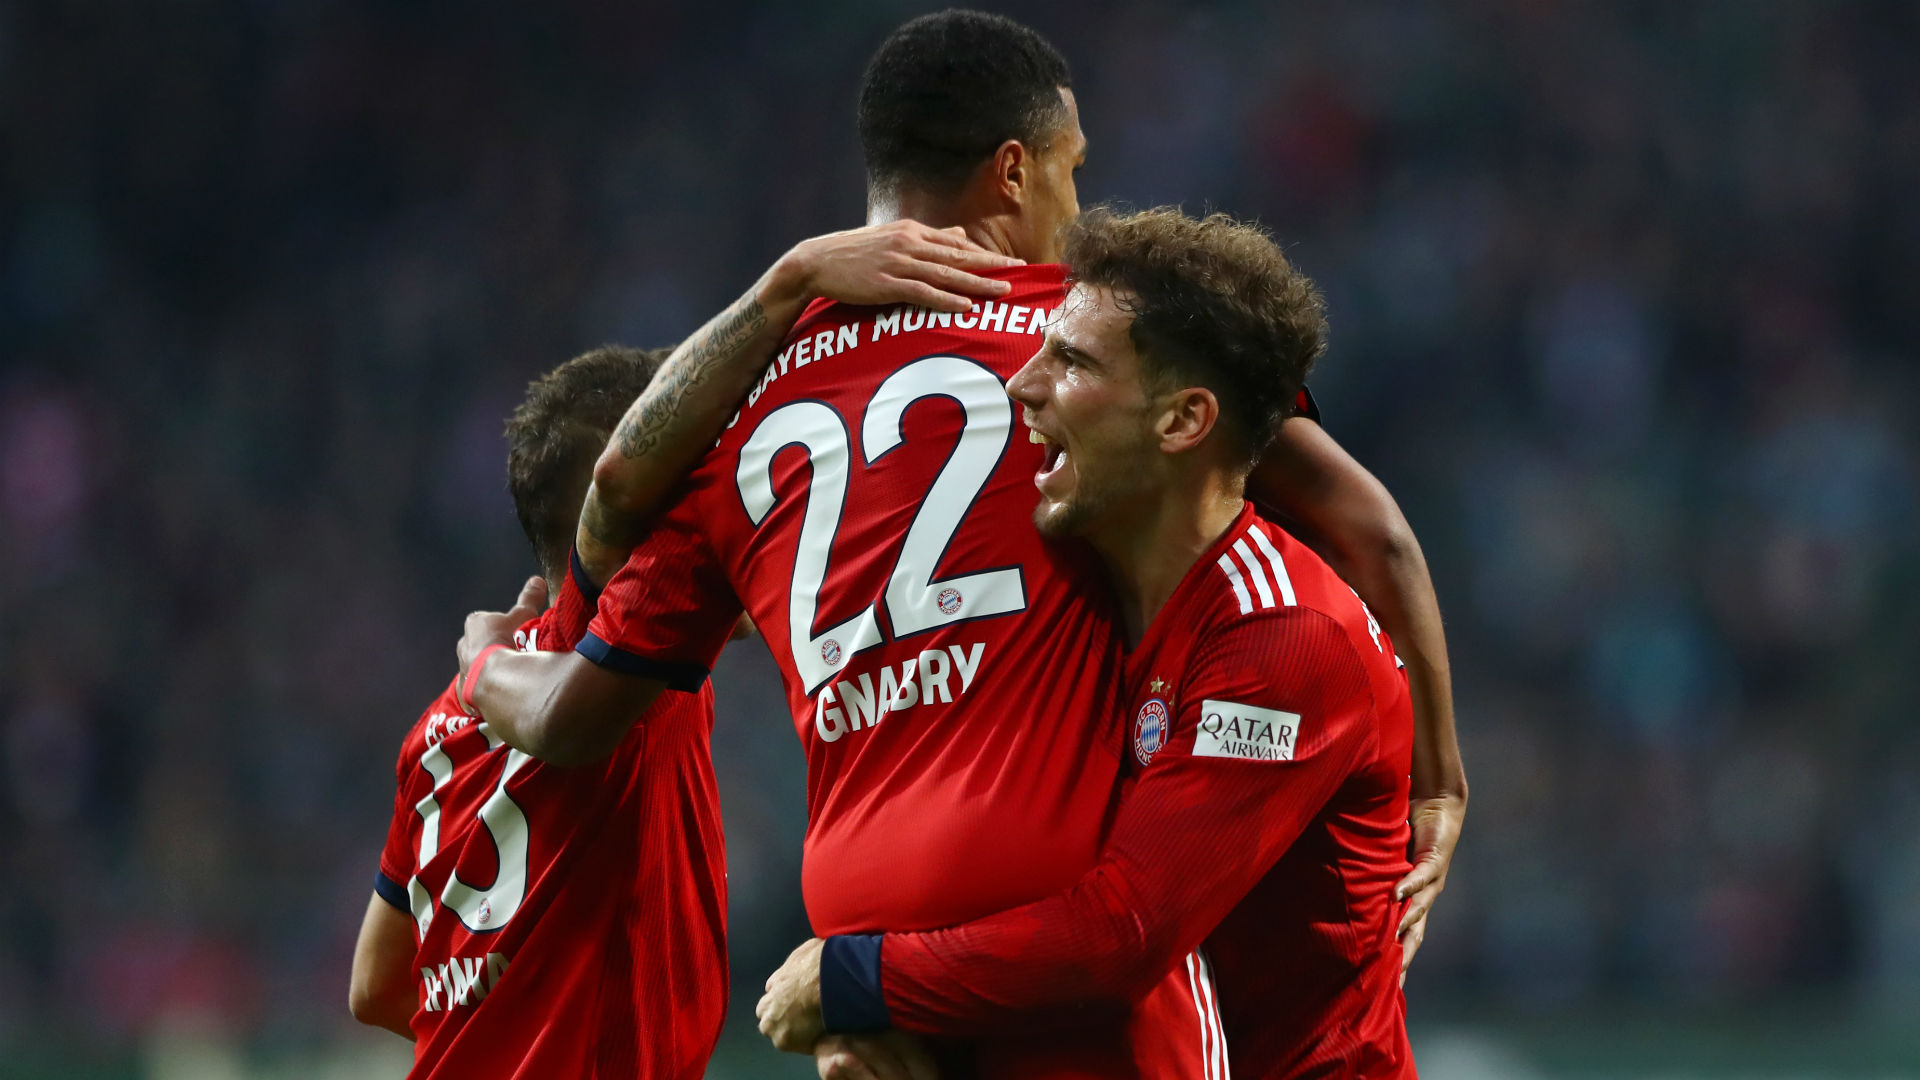 Serge Gnabry Double Leads Bayern Munich To 2-1 Win Over Werder Bremen